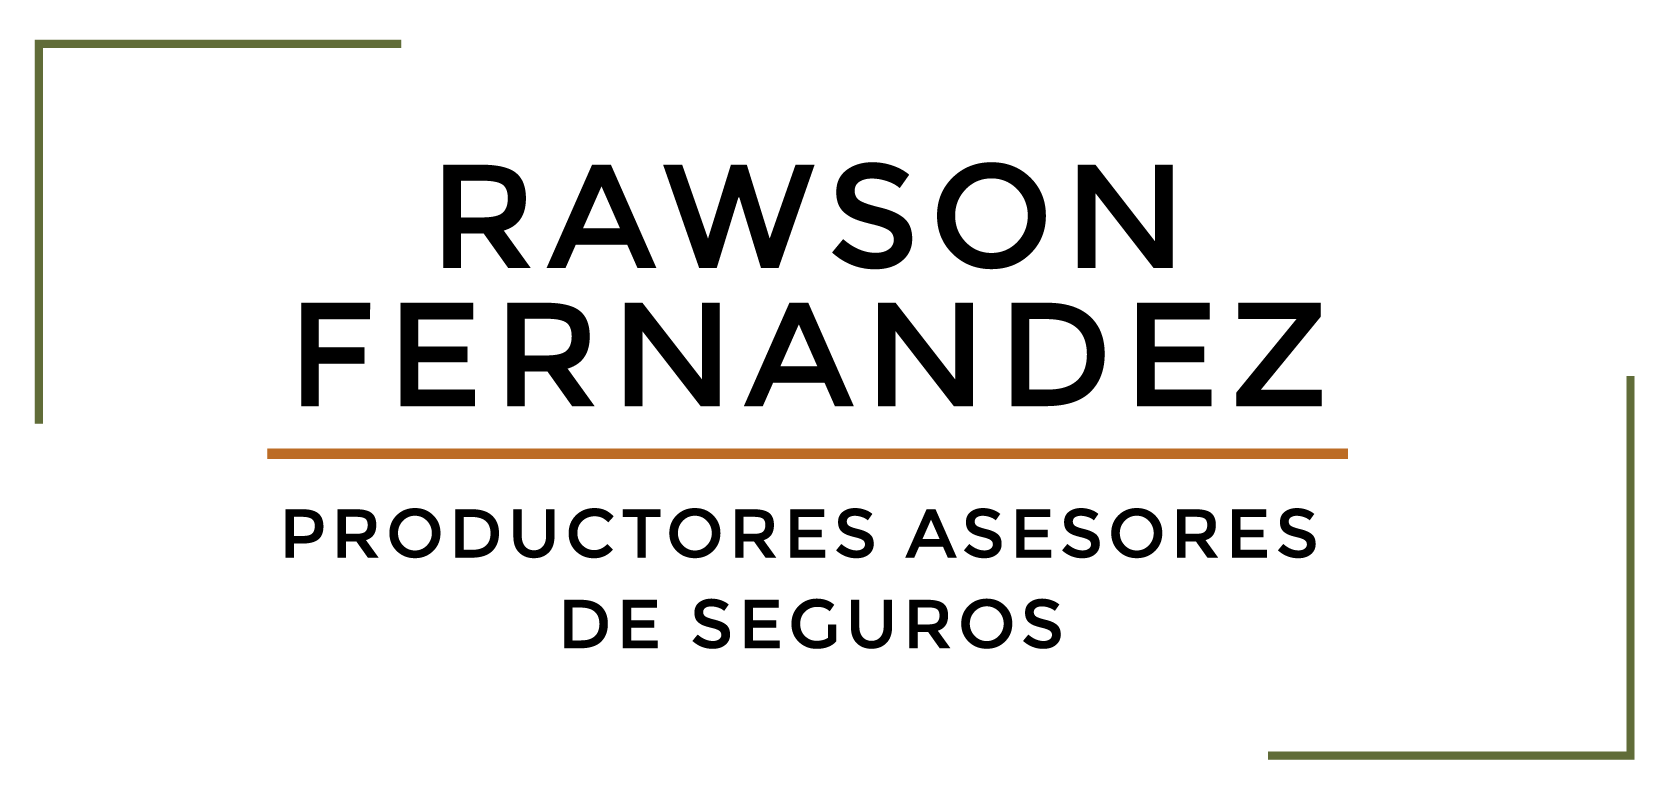 Rawson Fernandez